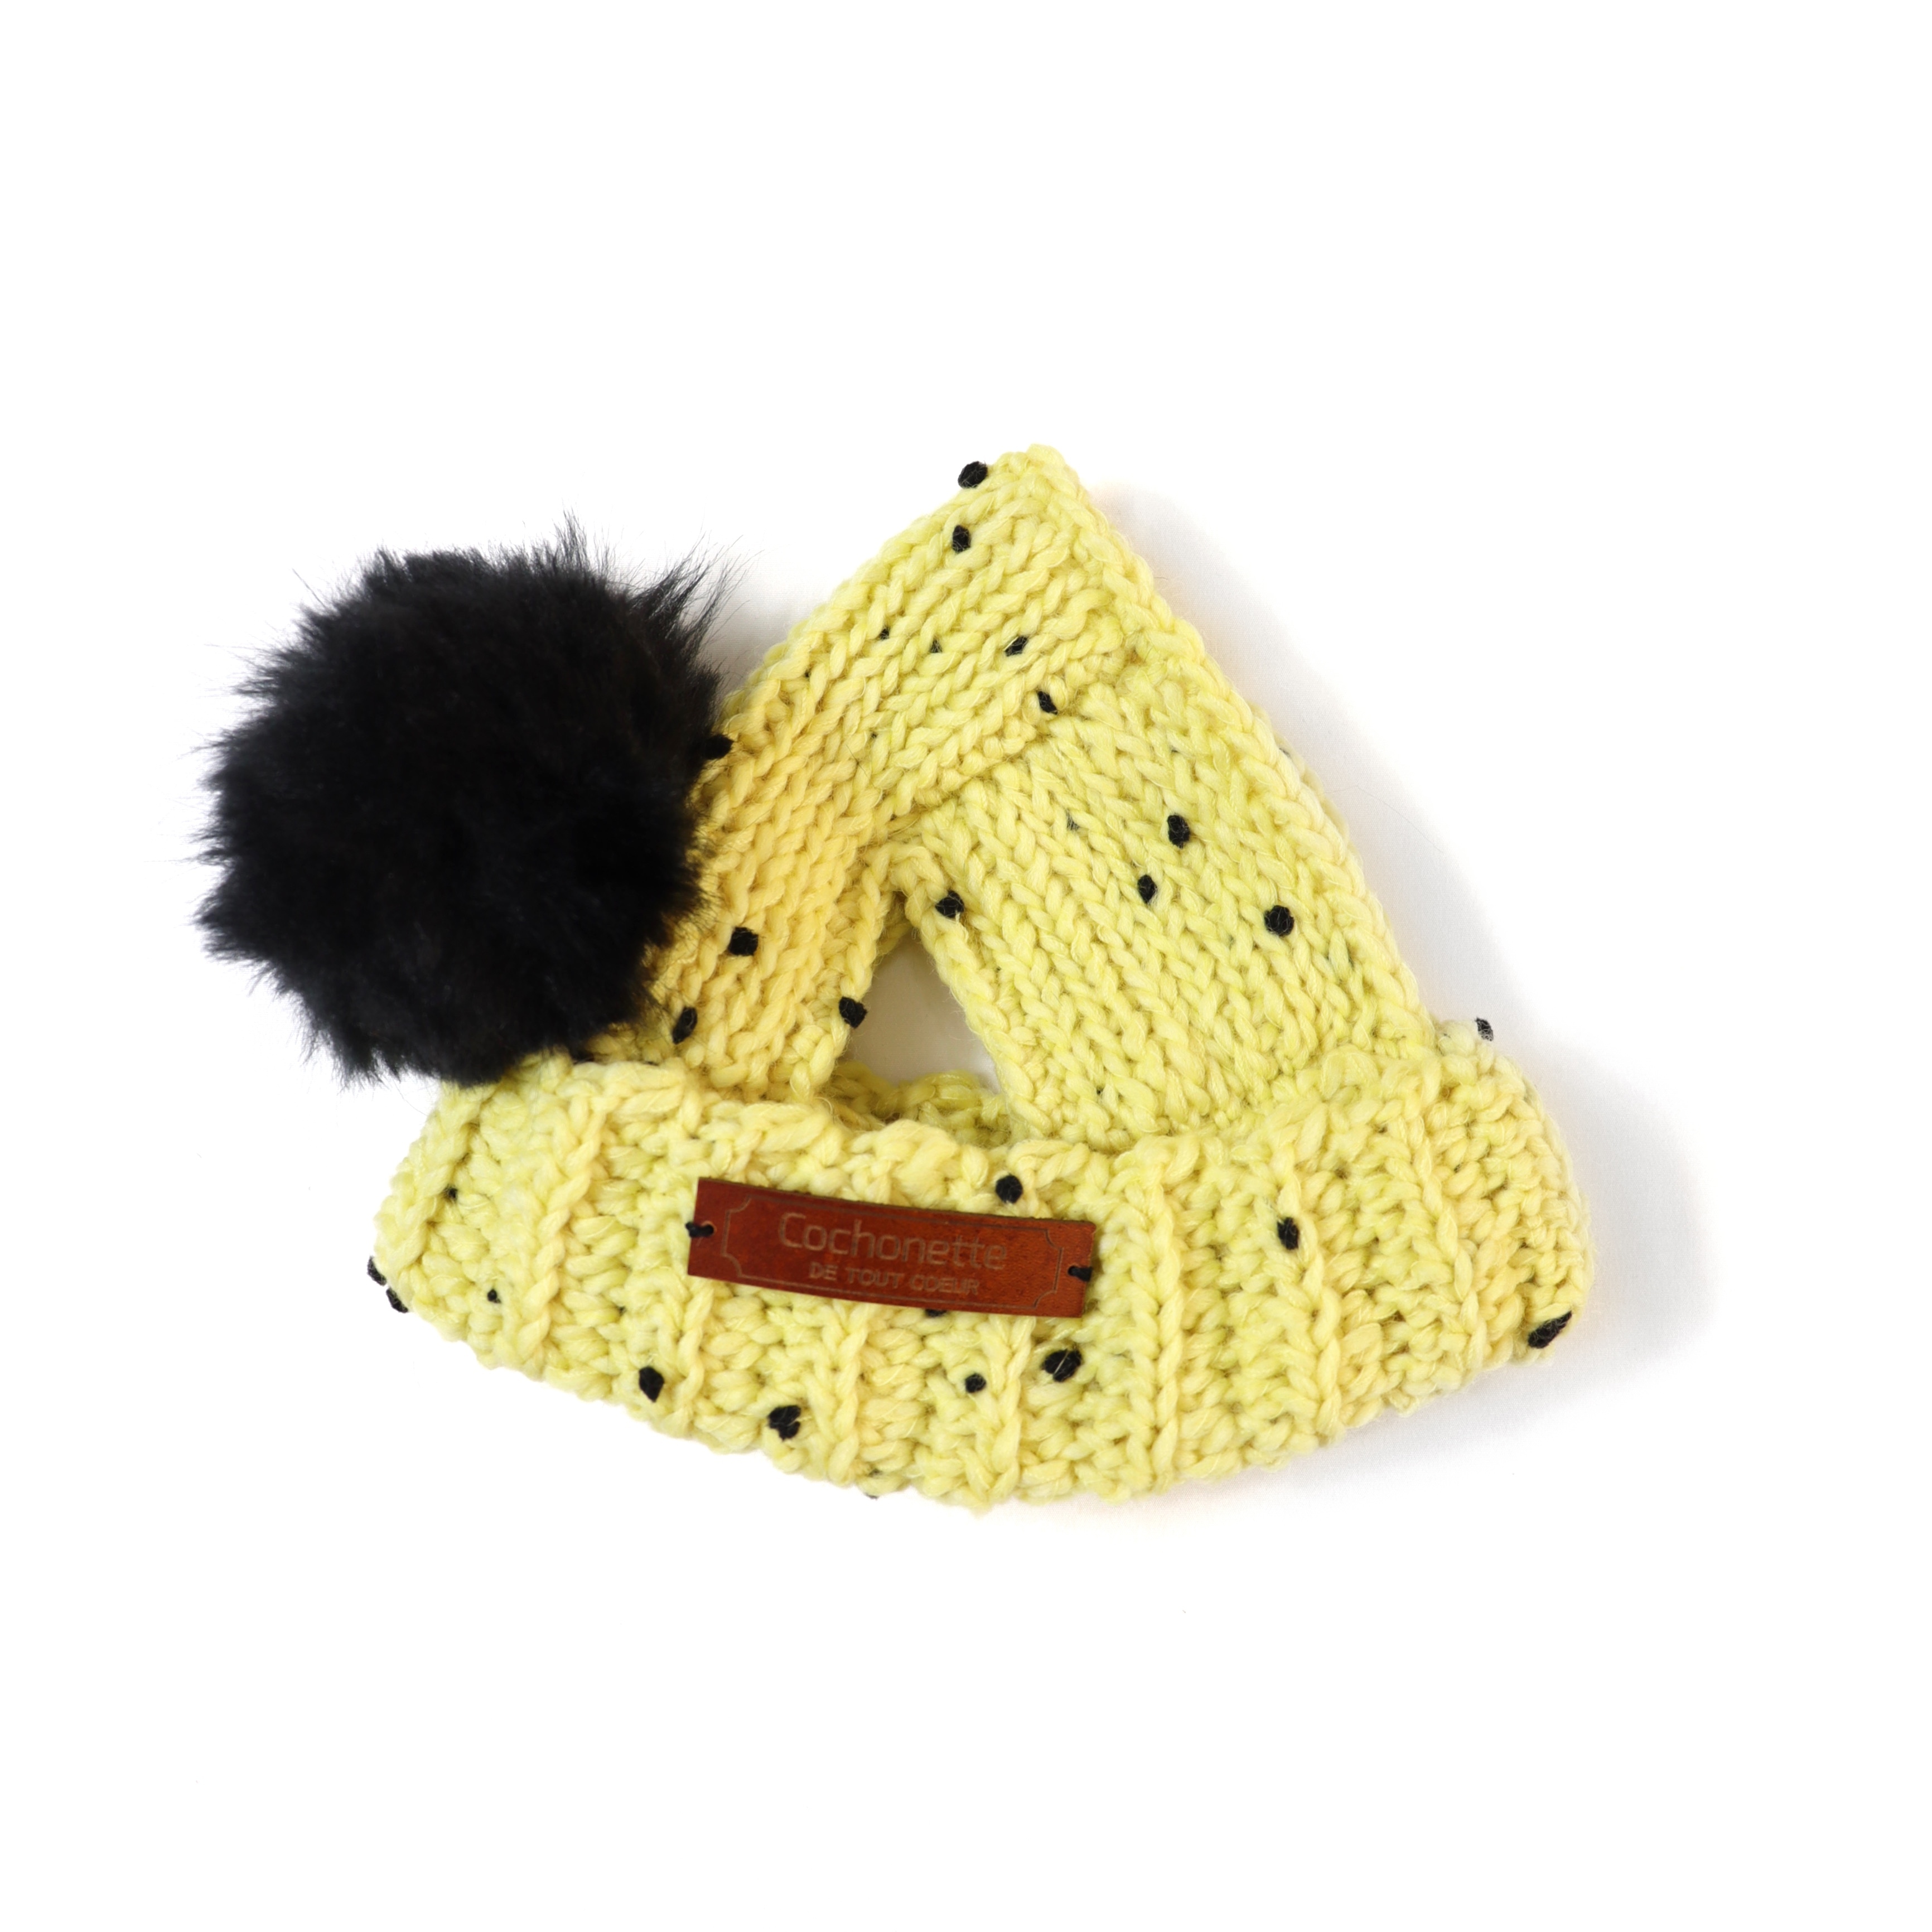 ランダムドットのファーポンポンニット帽 イエロー Cochonette Dog Wear Creator